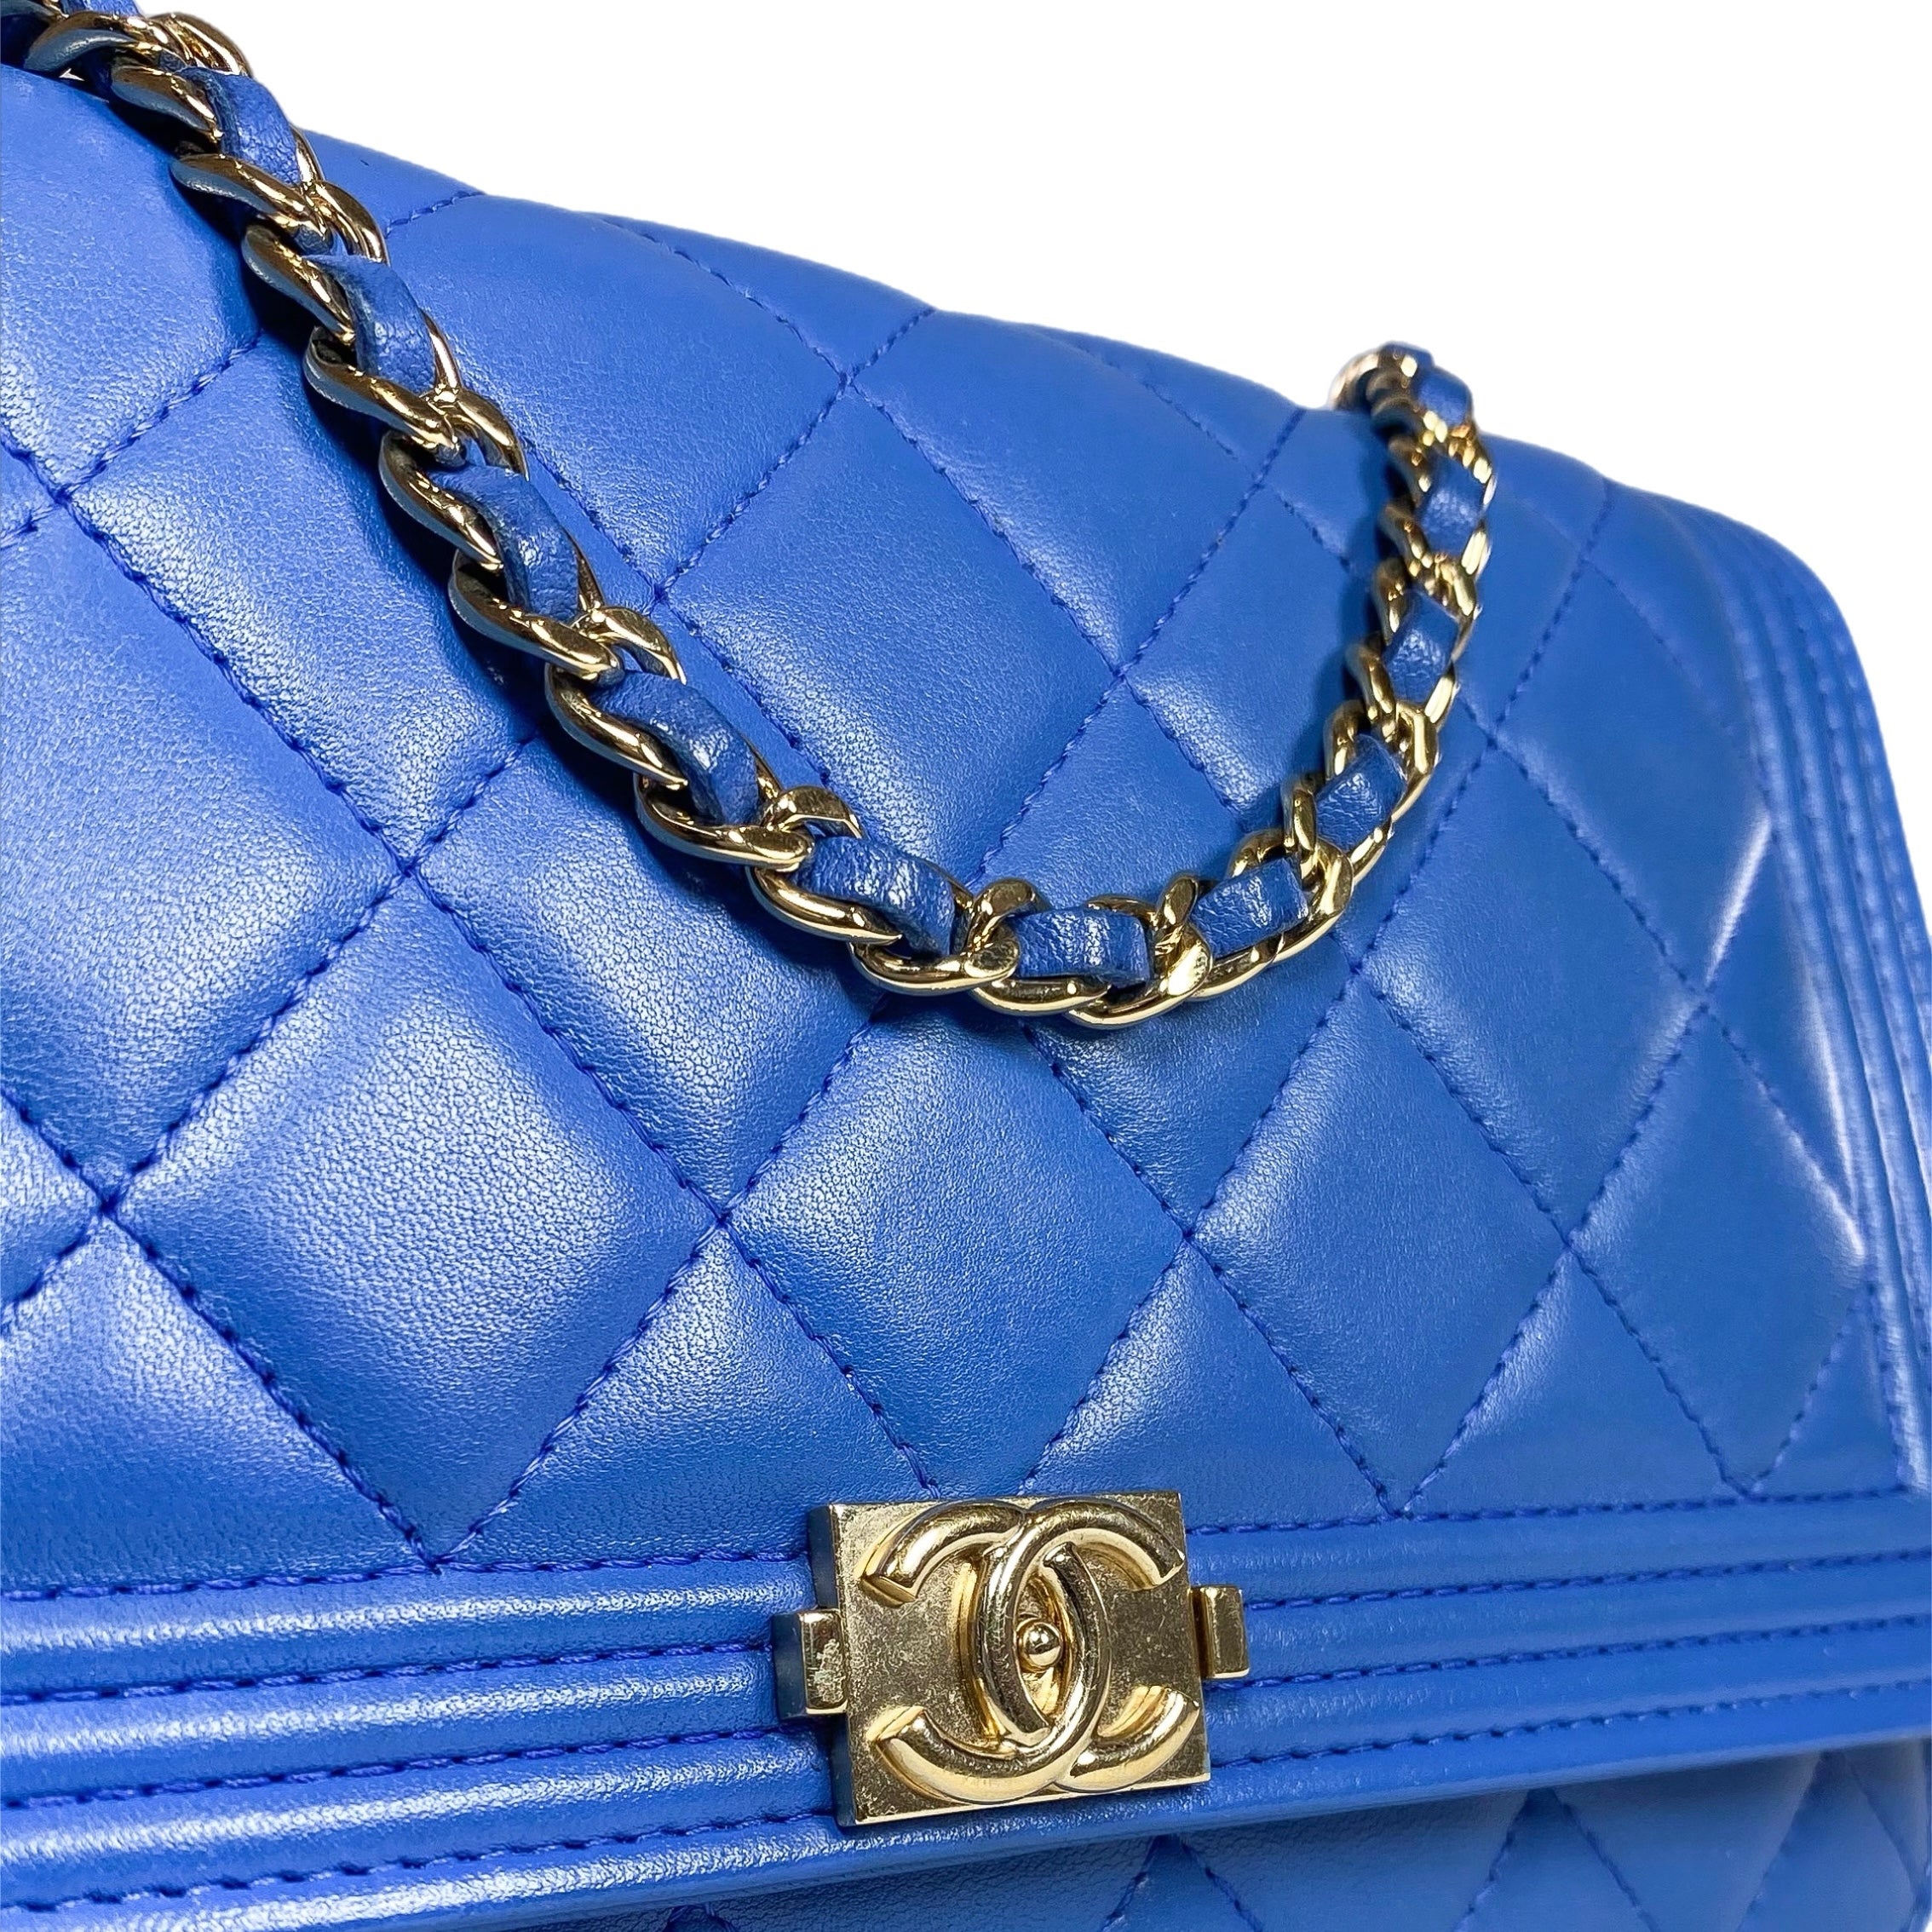 Chanel Royal Blue Lambskin Boy Wallet on Chain